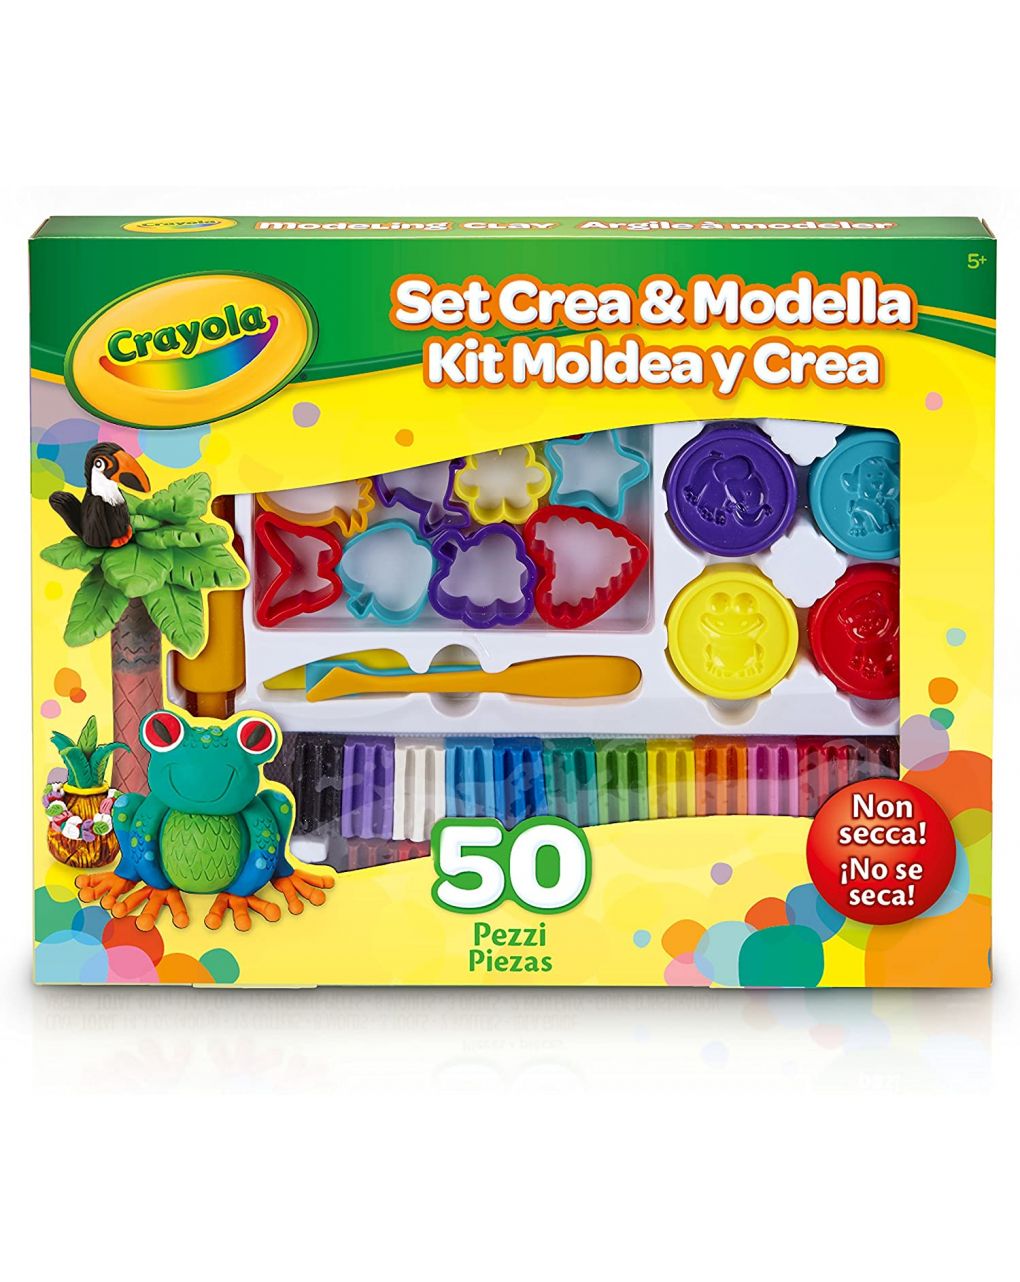 Crayola - set crea & modella 50 pz - Crayola